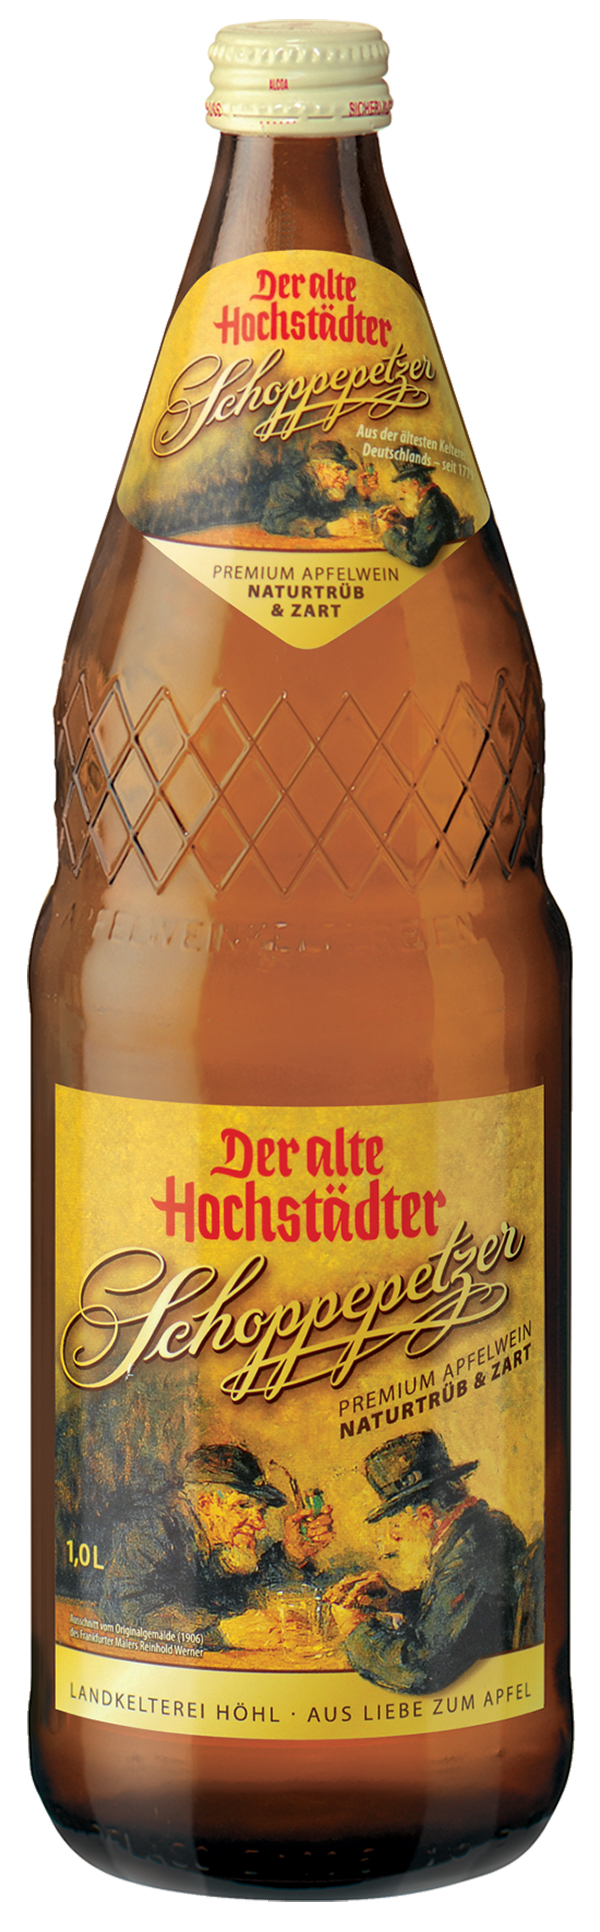 Der Alte Hochstädter Schoppenpetzer Apfelwein  6 x 1,0 l (Glas)